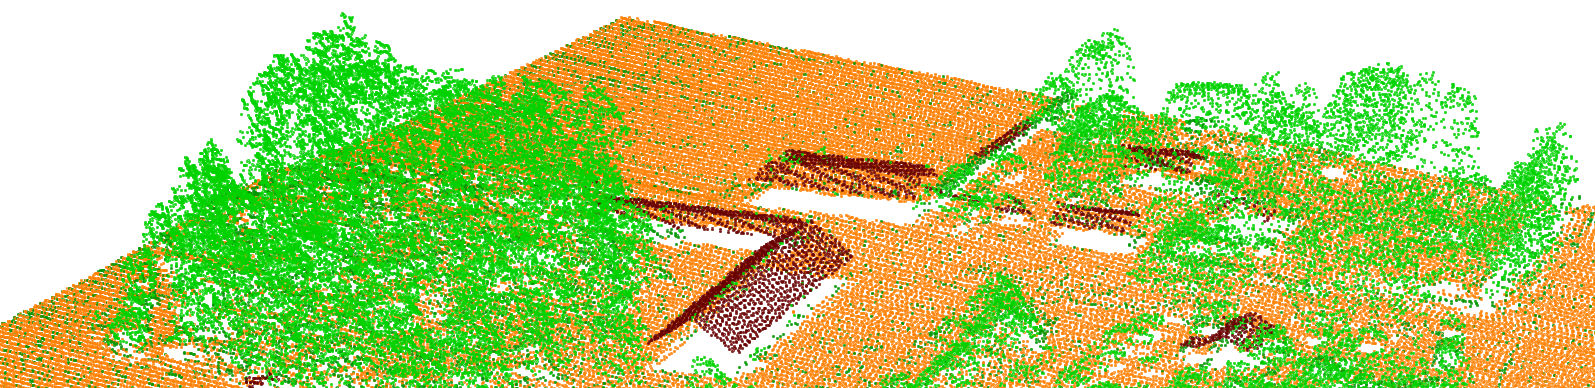 L a n t m ä t e r i e t 2011-11-07 2 Figur 1 Punktmoln klassat som mark, vegetation och byggnader. Bilden kommer från ett område med överlapp mellan stråk där punkttätheten är dubblerad.